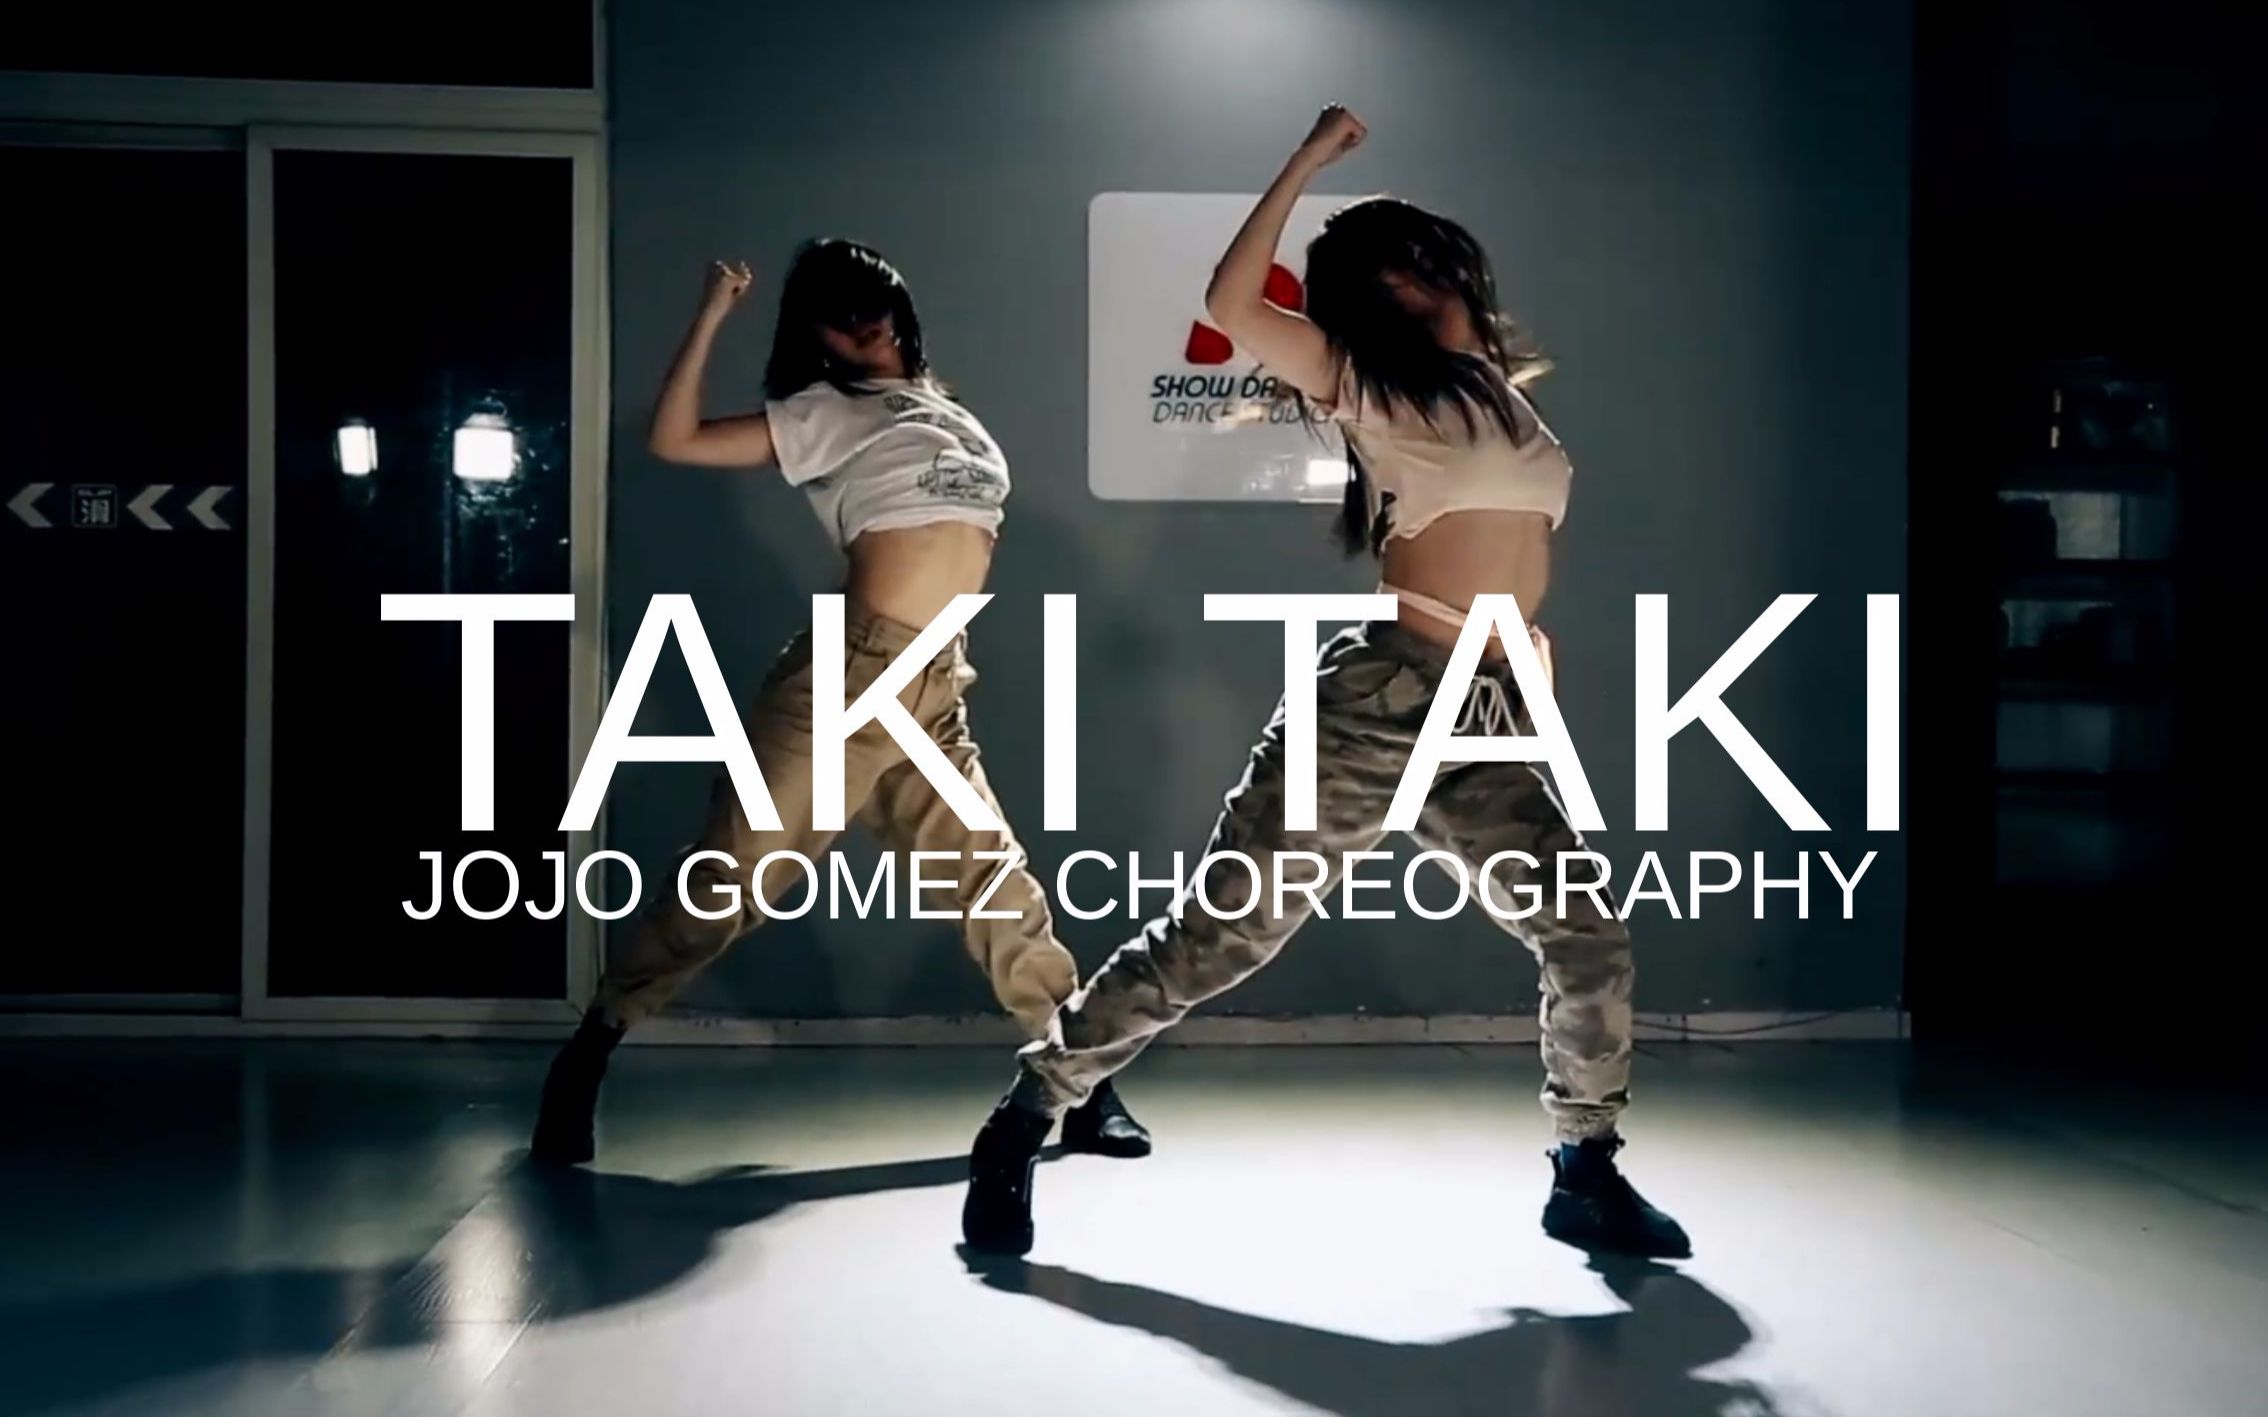 【SD dance】jojo gomez choreo/你的身体可以“taki taki”吗？